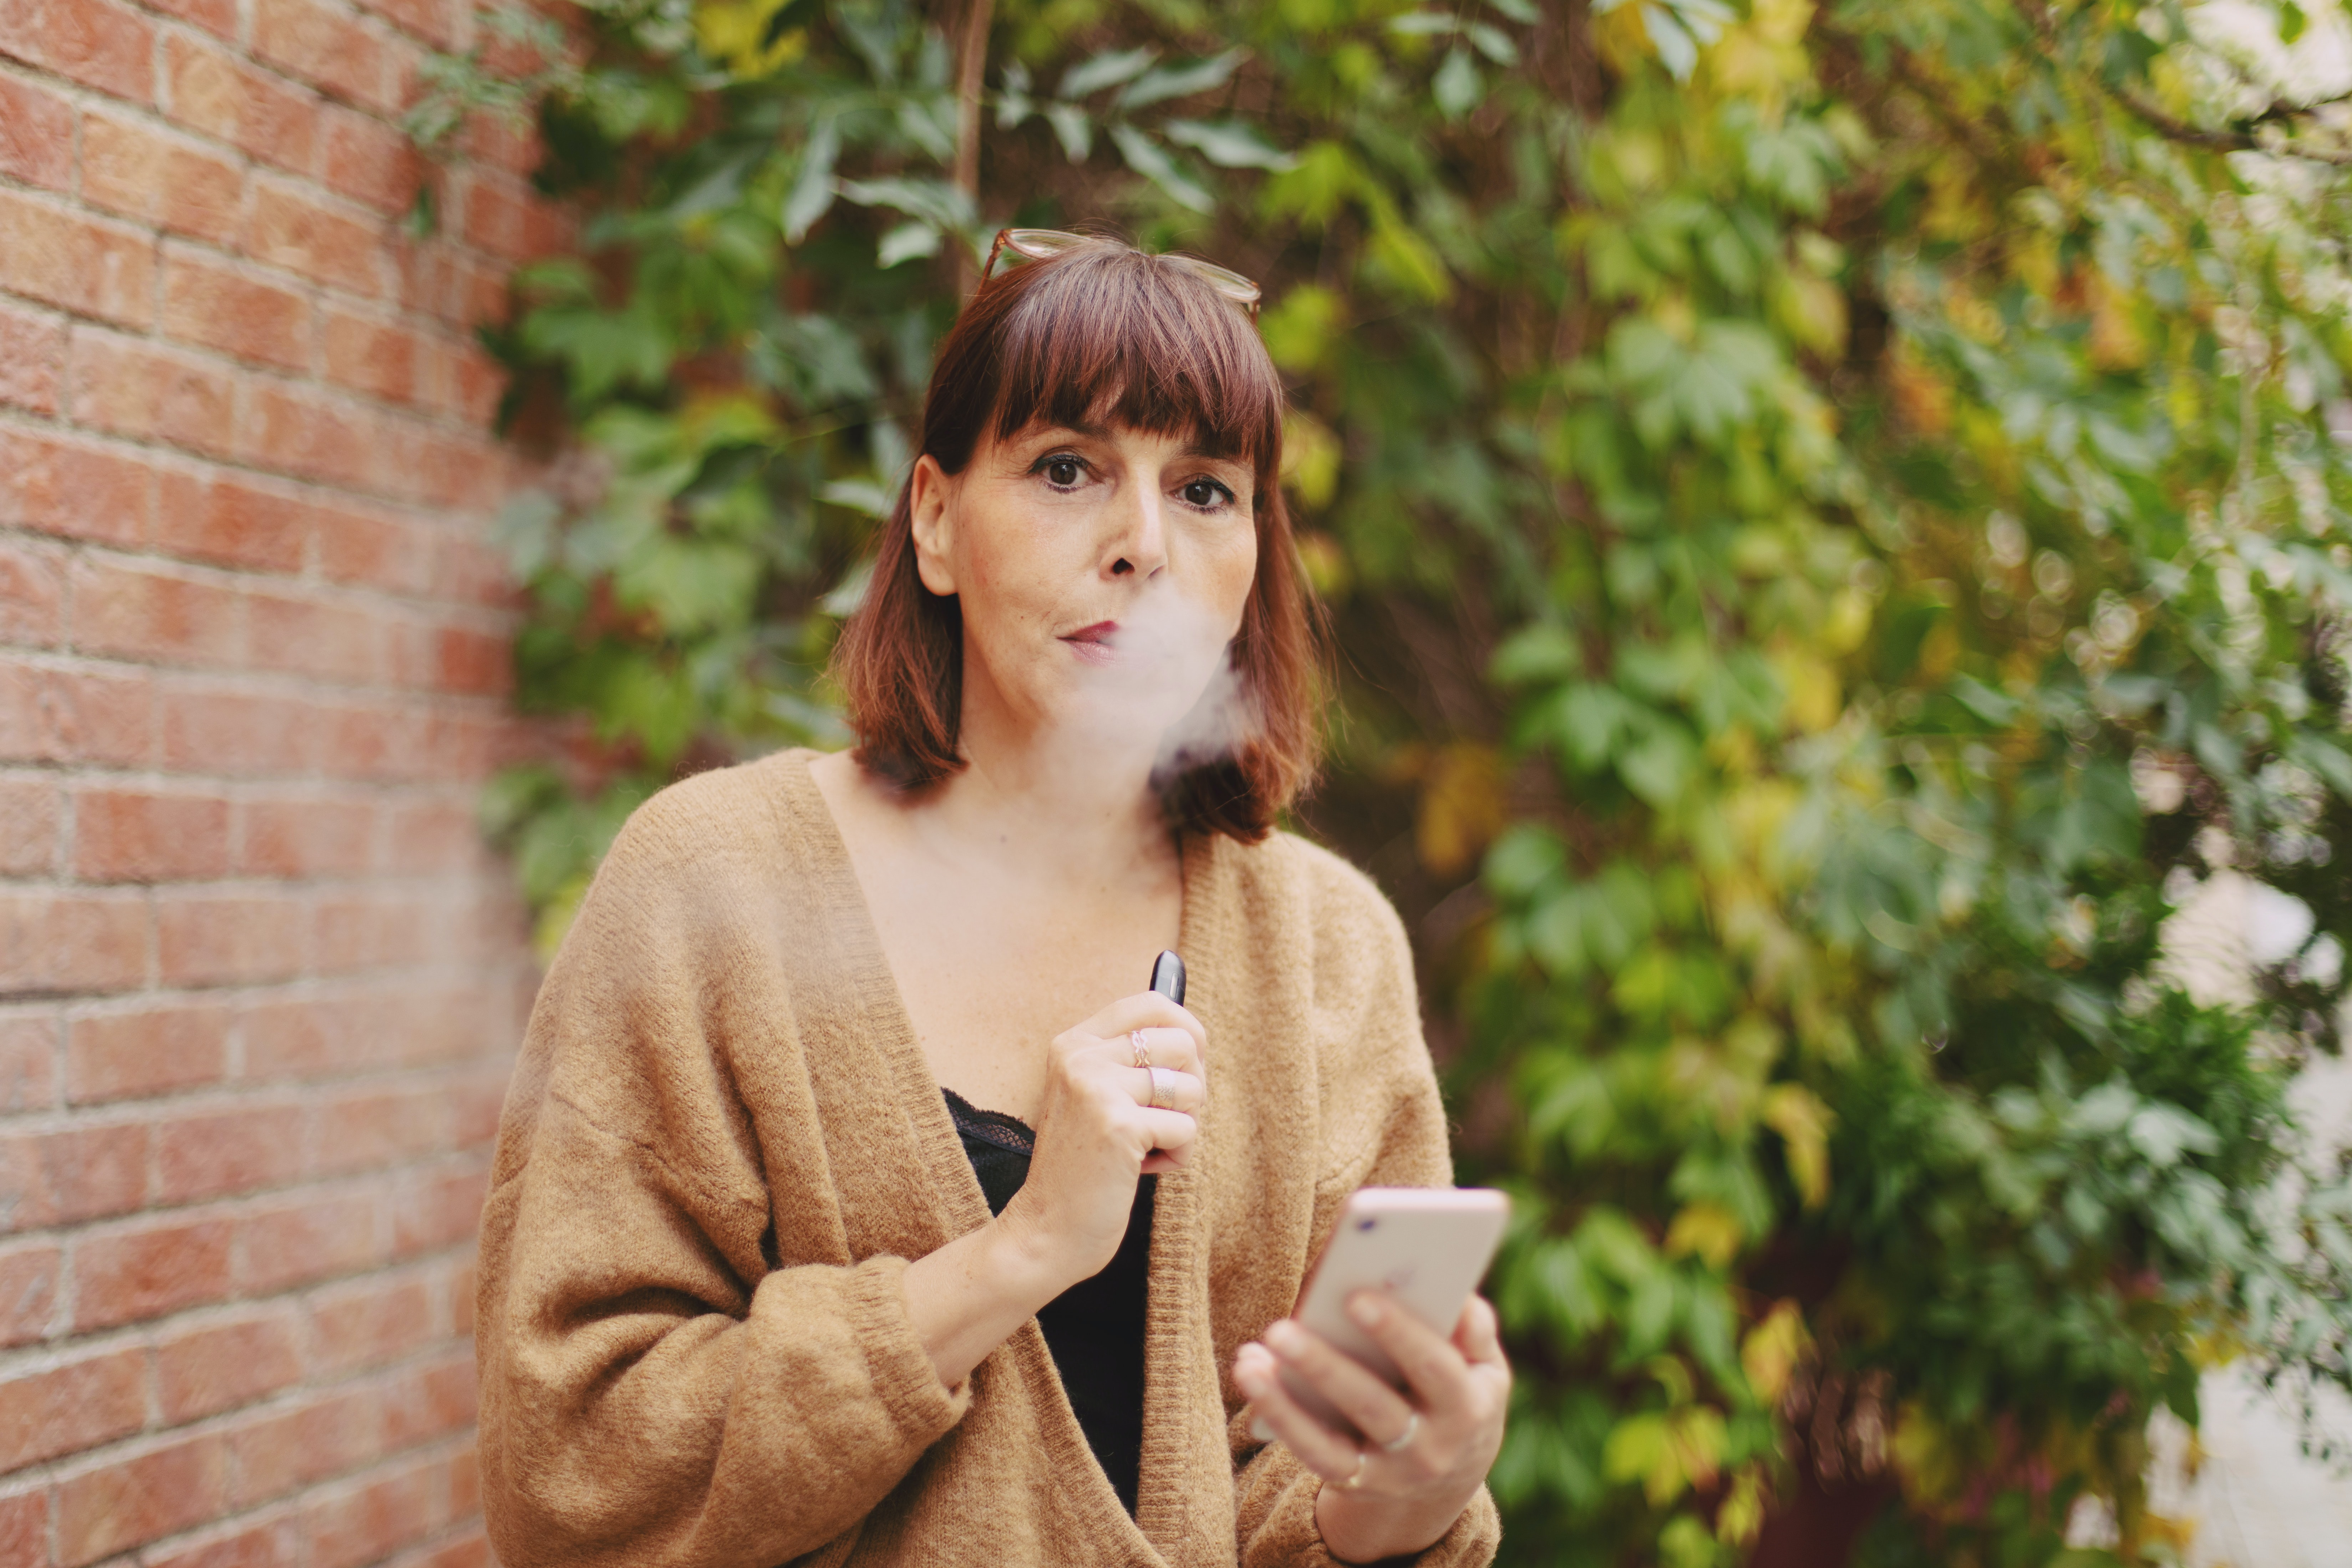 電子タバコと紙巻きタバコの違いは何ですか?